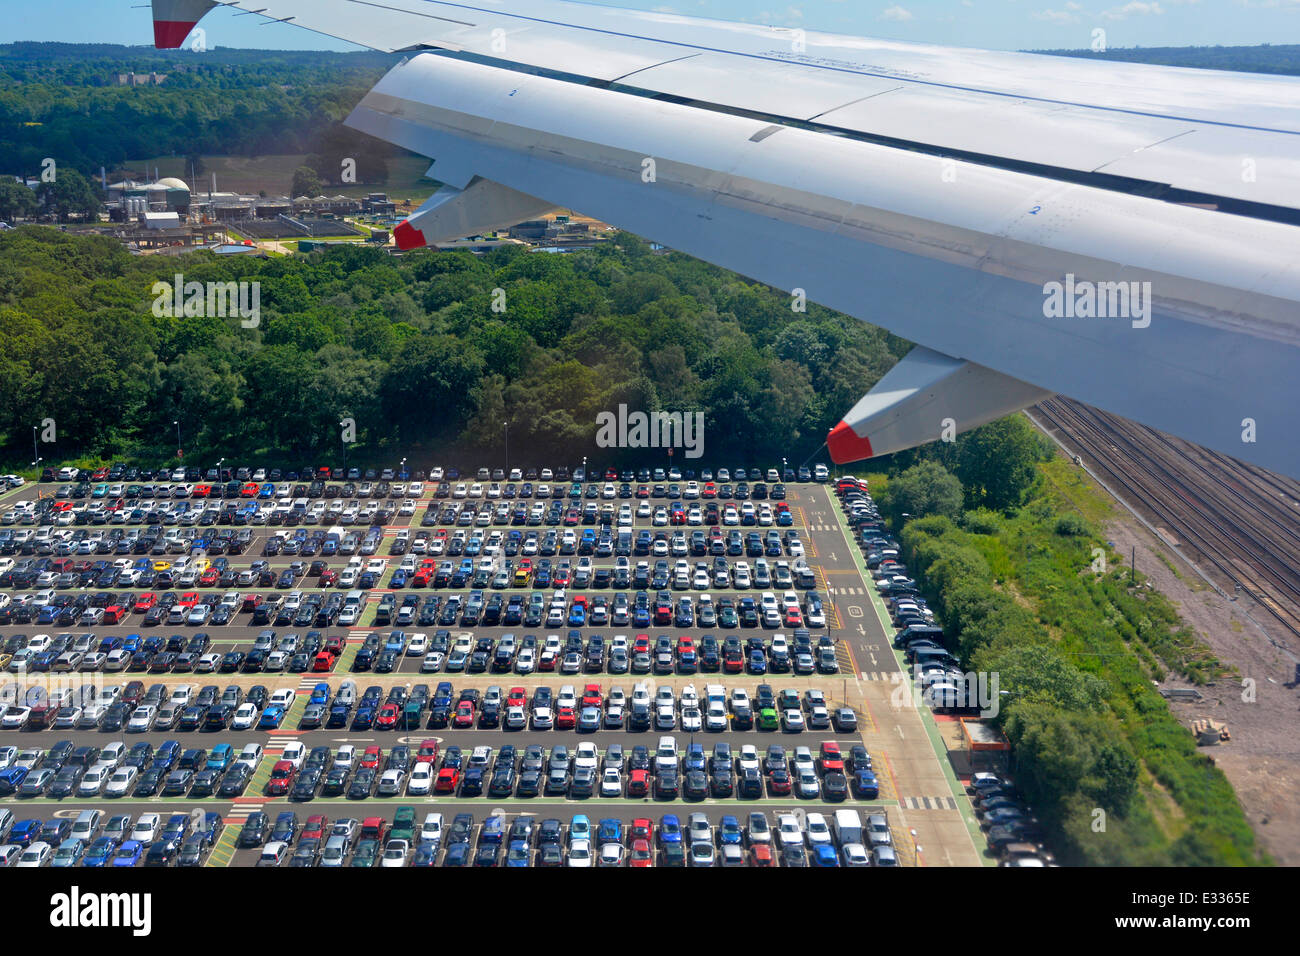 Vue aérienne voitures parking au parking offre des vues sur le terminal nord et sud depuis l'atterrissage en avion à réaction à l'aéroport de Gatwick Crawley West Sussex Angleterre Banque D'Images